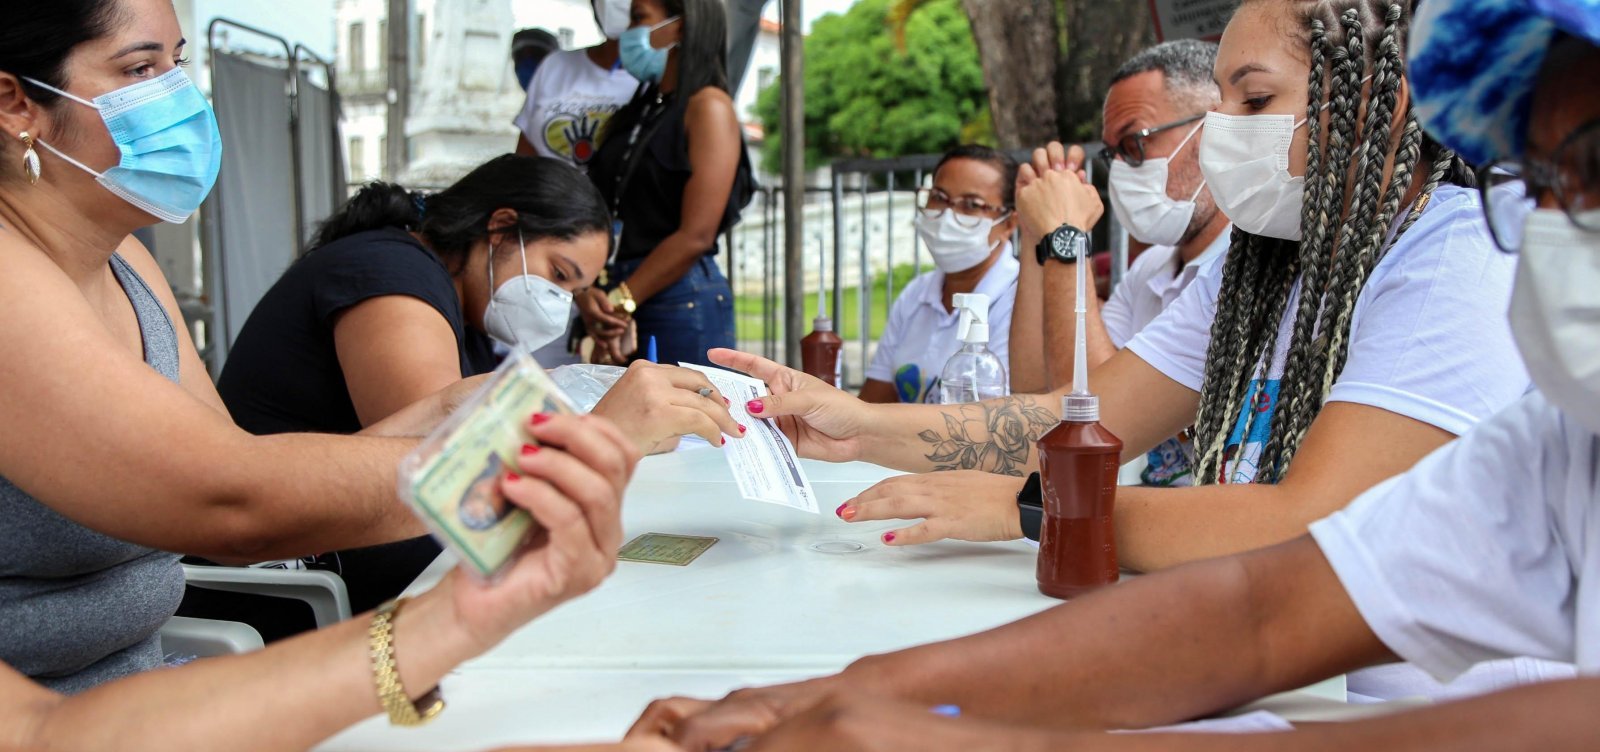 Em 4 dias, pontos de testagem rápida em Salvador registram 907 novos casos de Covid